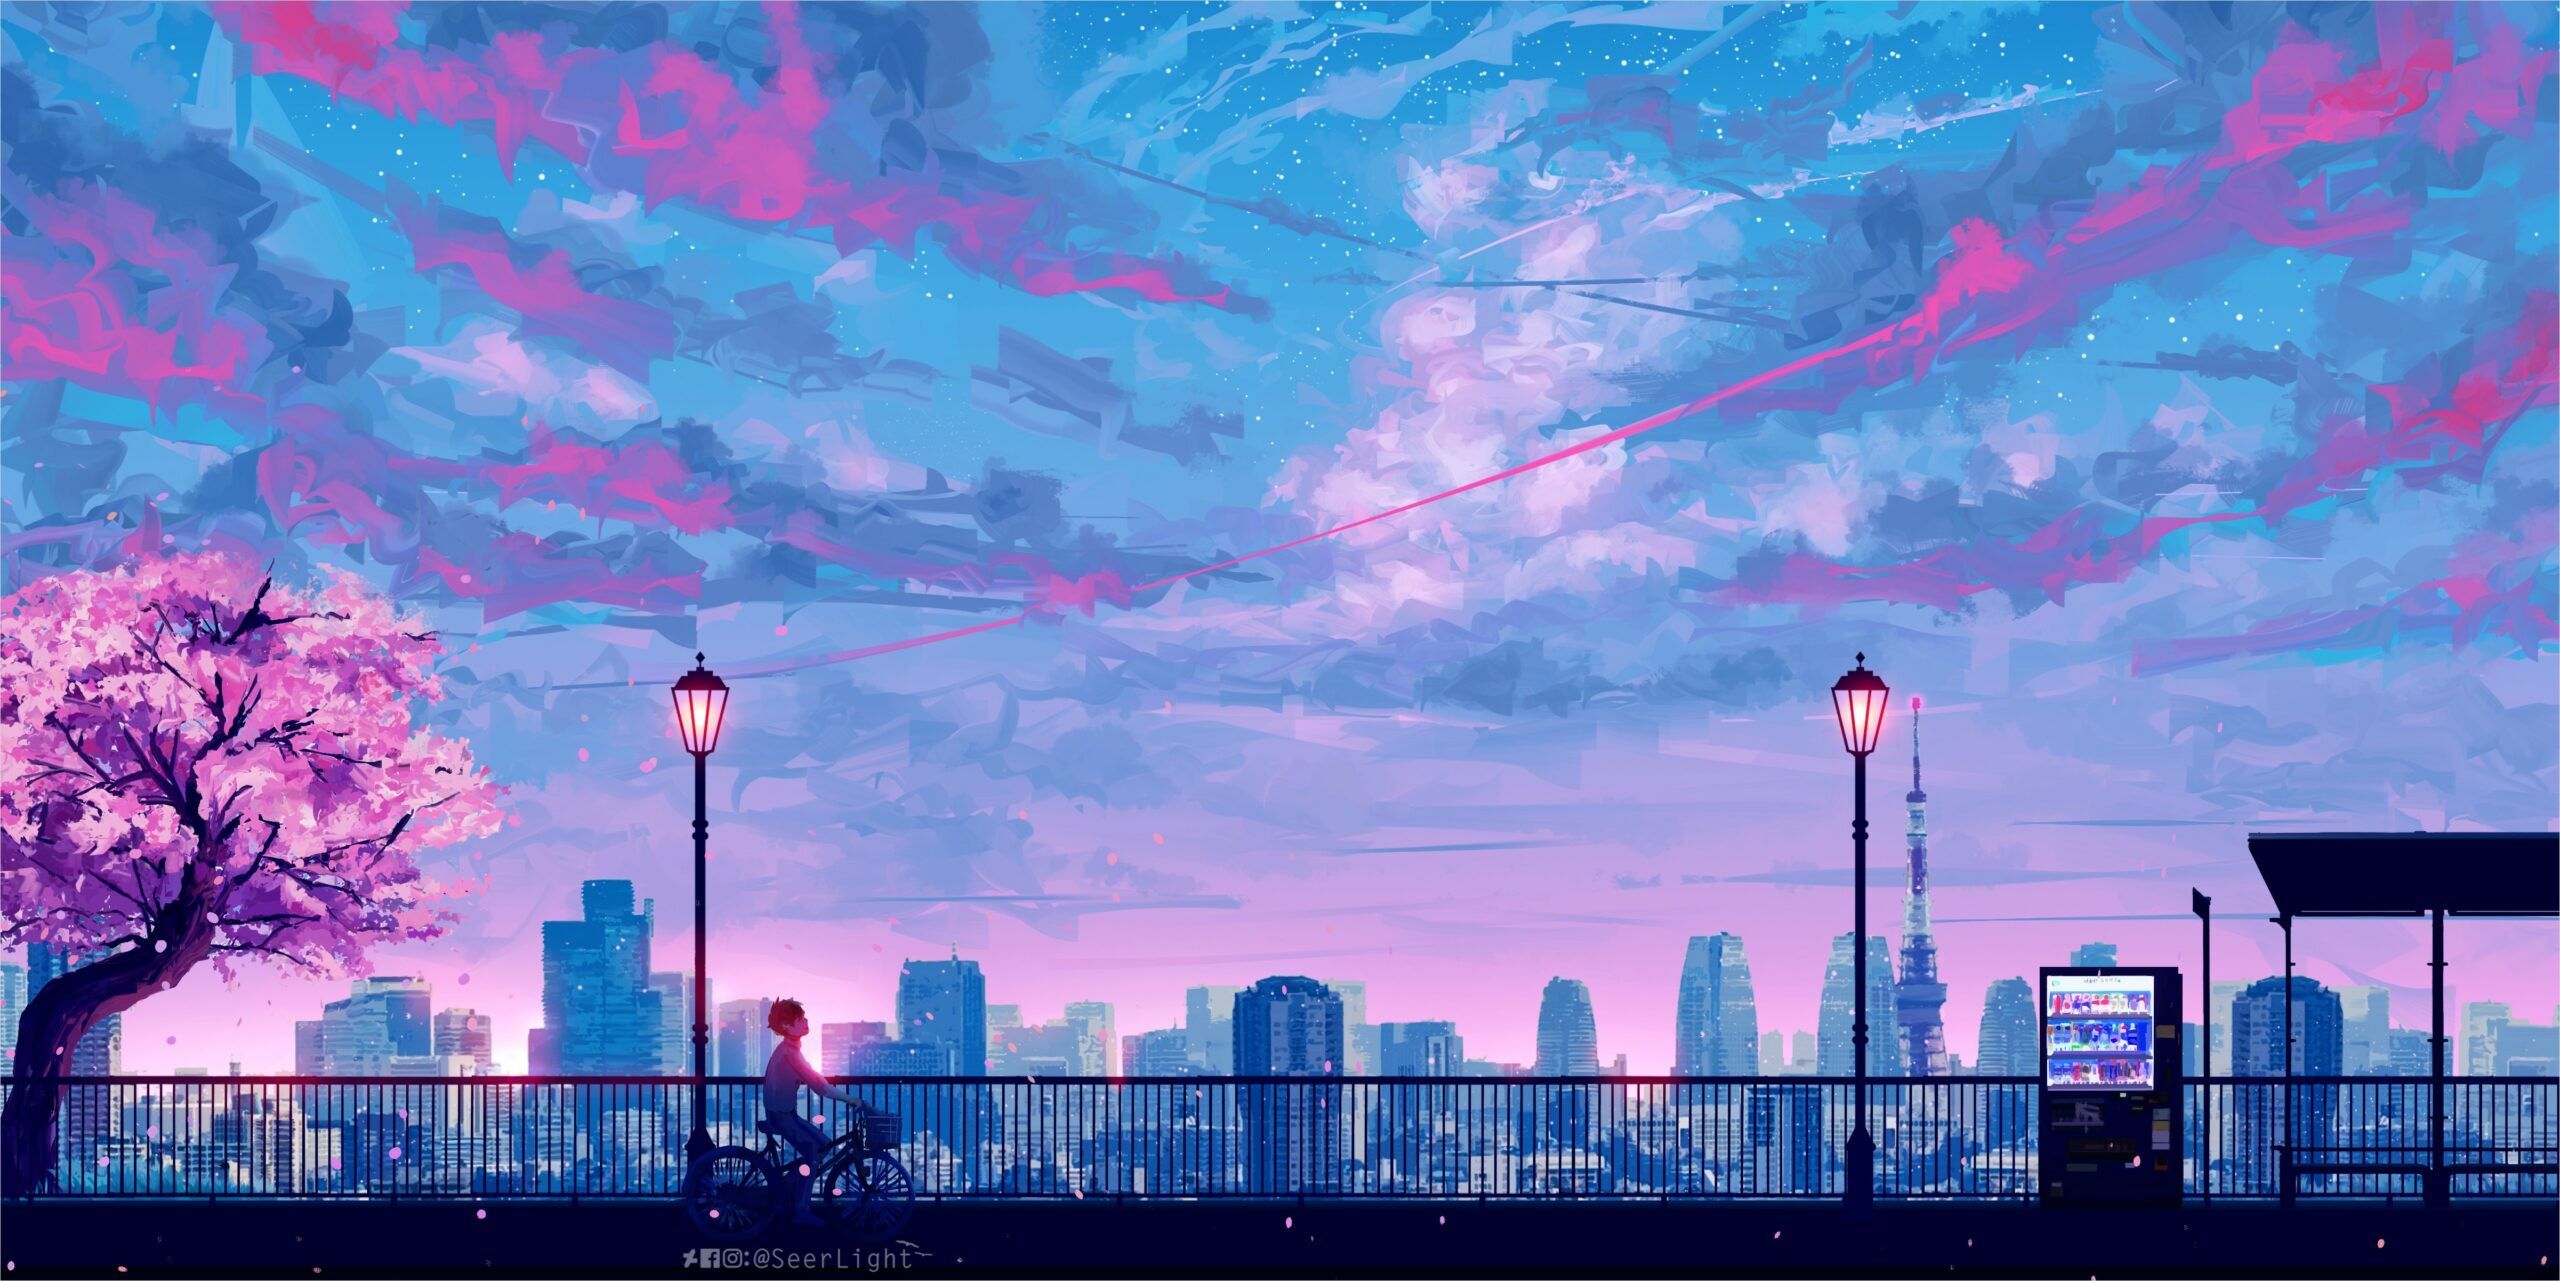 4k Anime Landscape Wallpaper em 2020. Papel de parede do